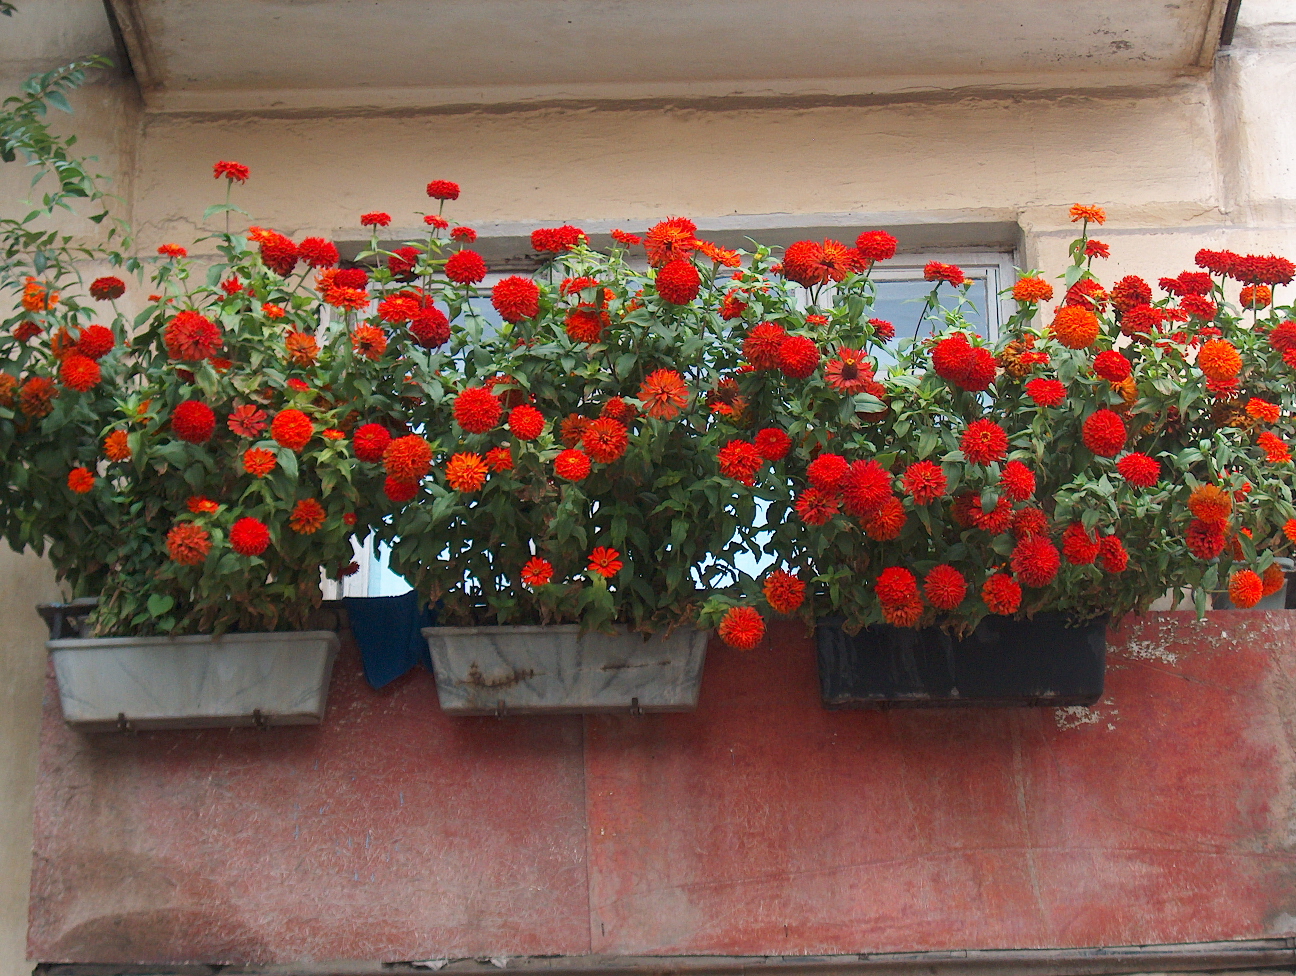 fleurs lumineuses à l'intérieur du balcon sur les linteaux, par exemple